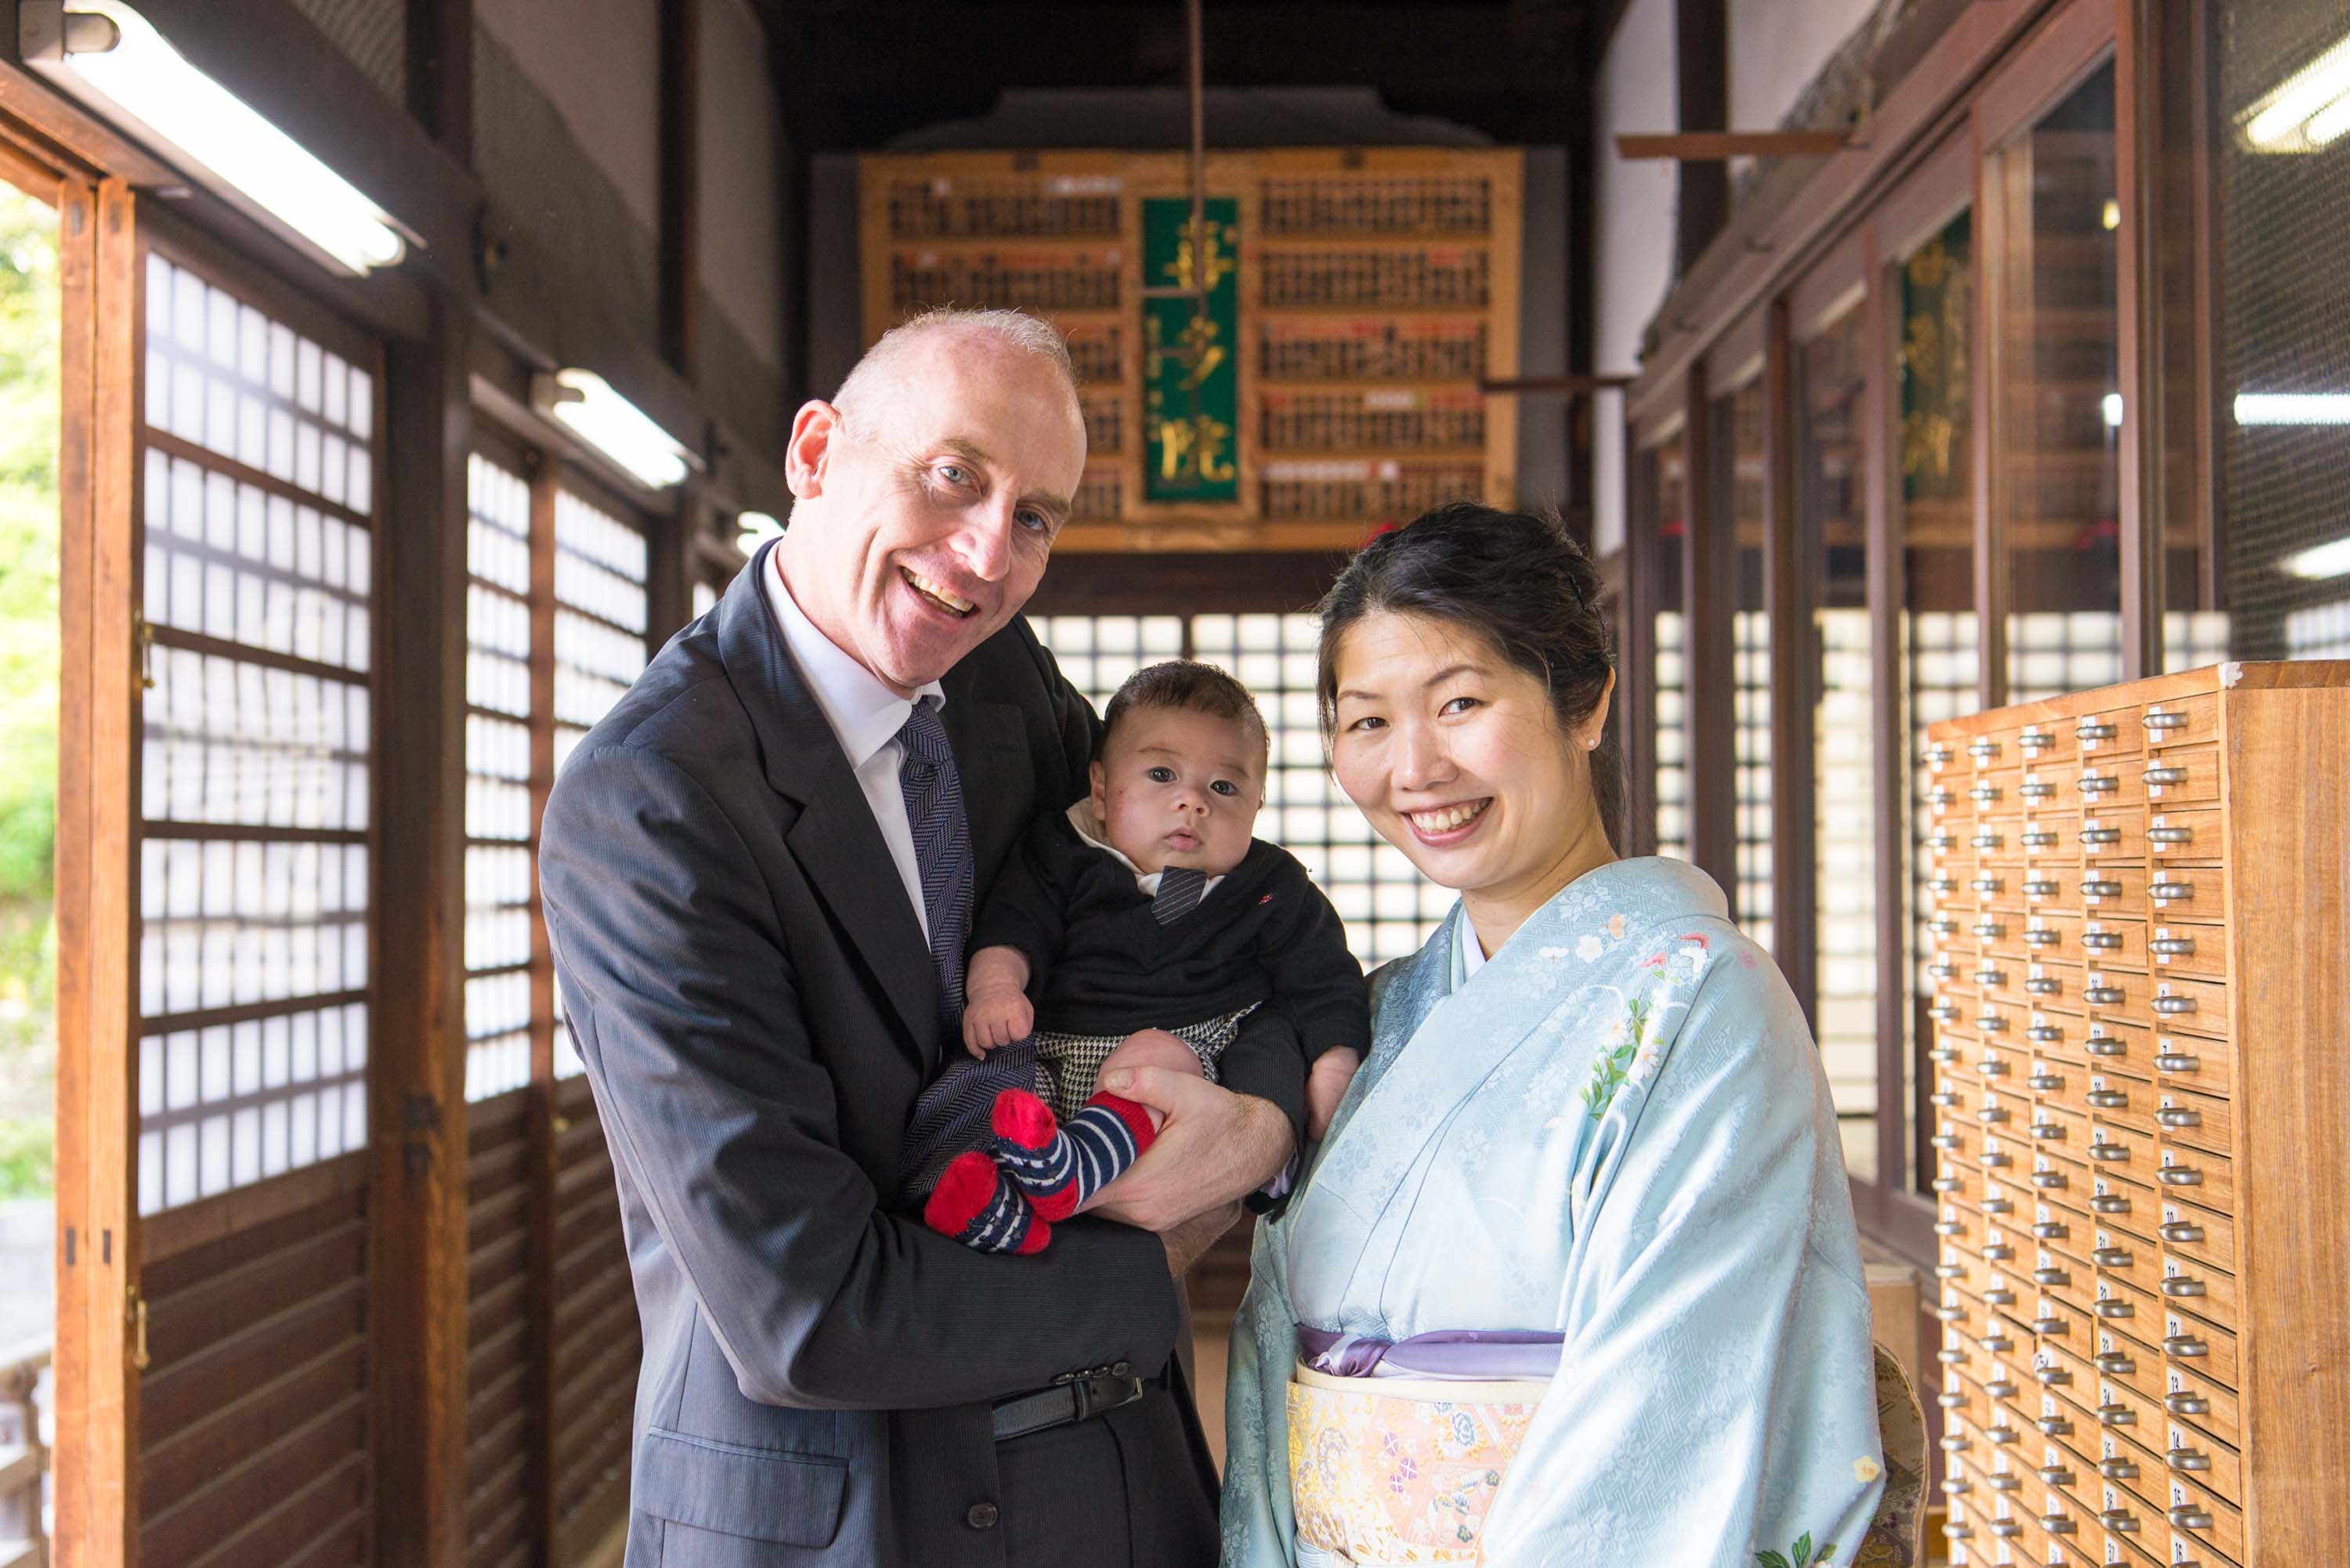 喜多院本殿の中に立つ赤ちゃんを抱いた男性と横に立つ女性の画像